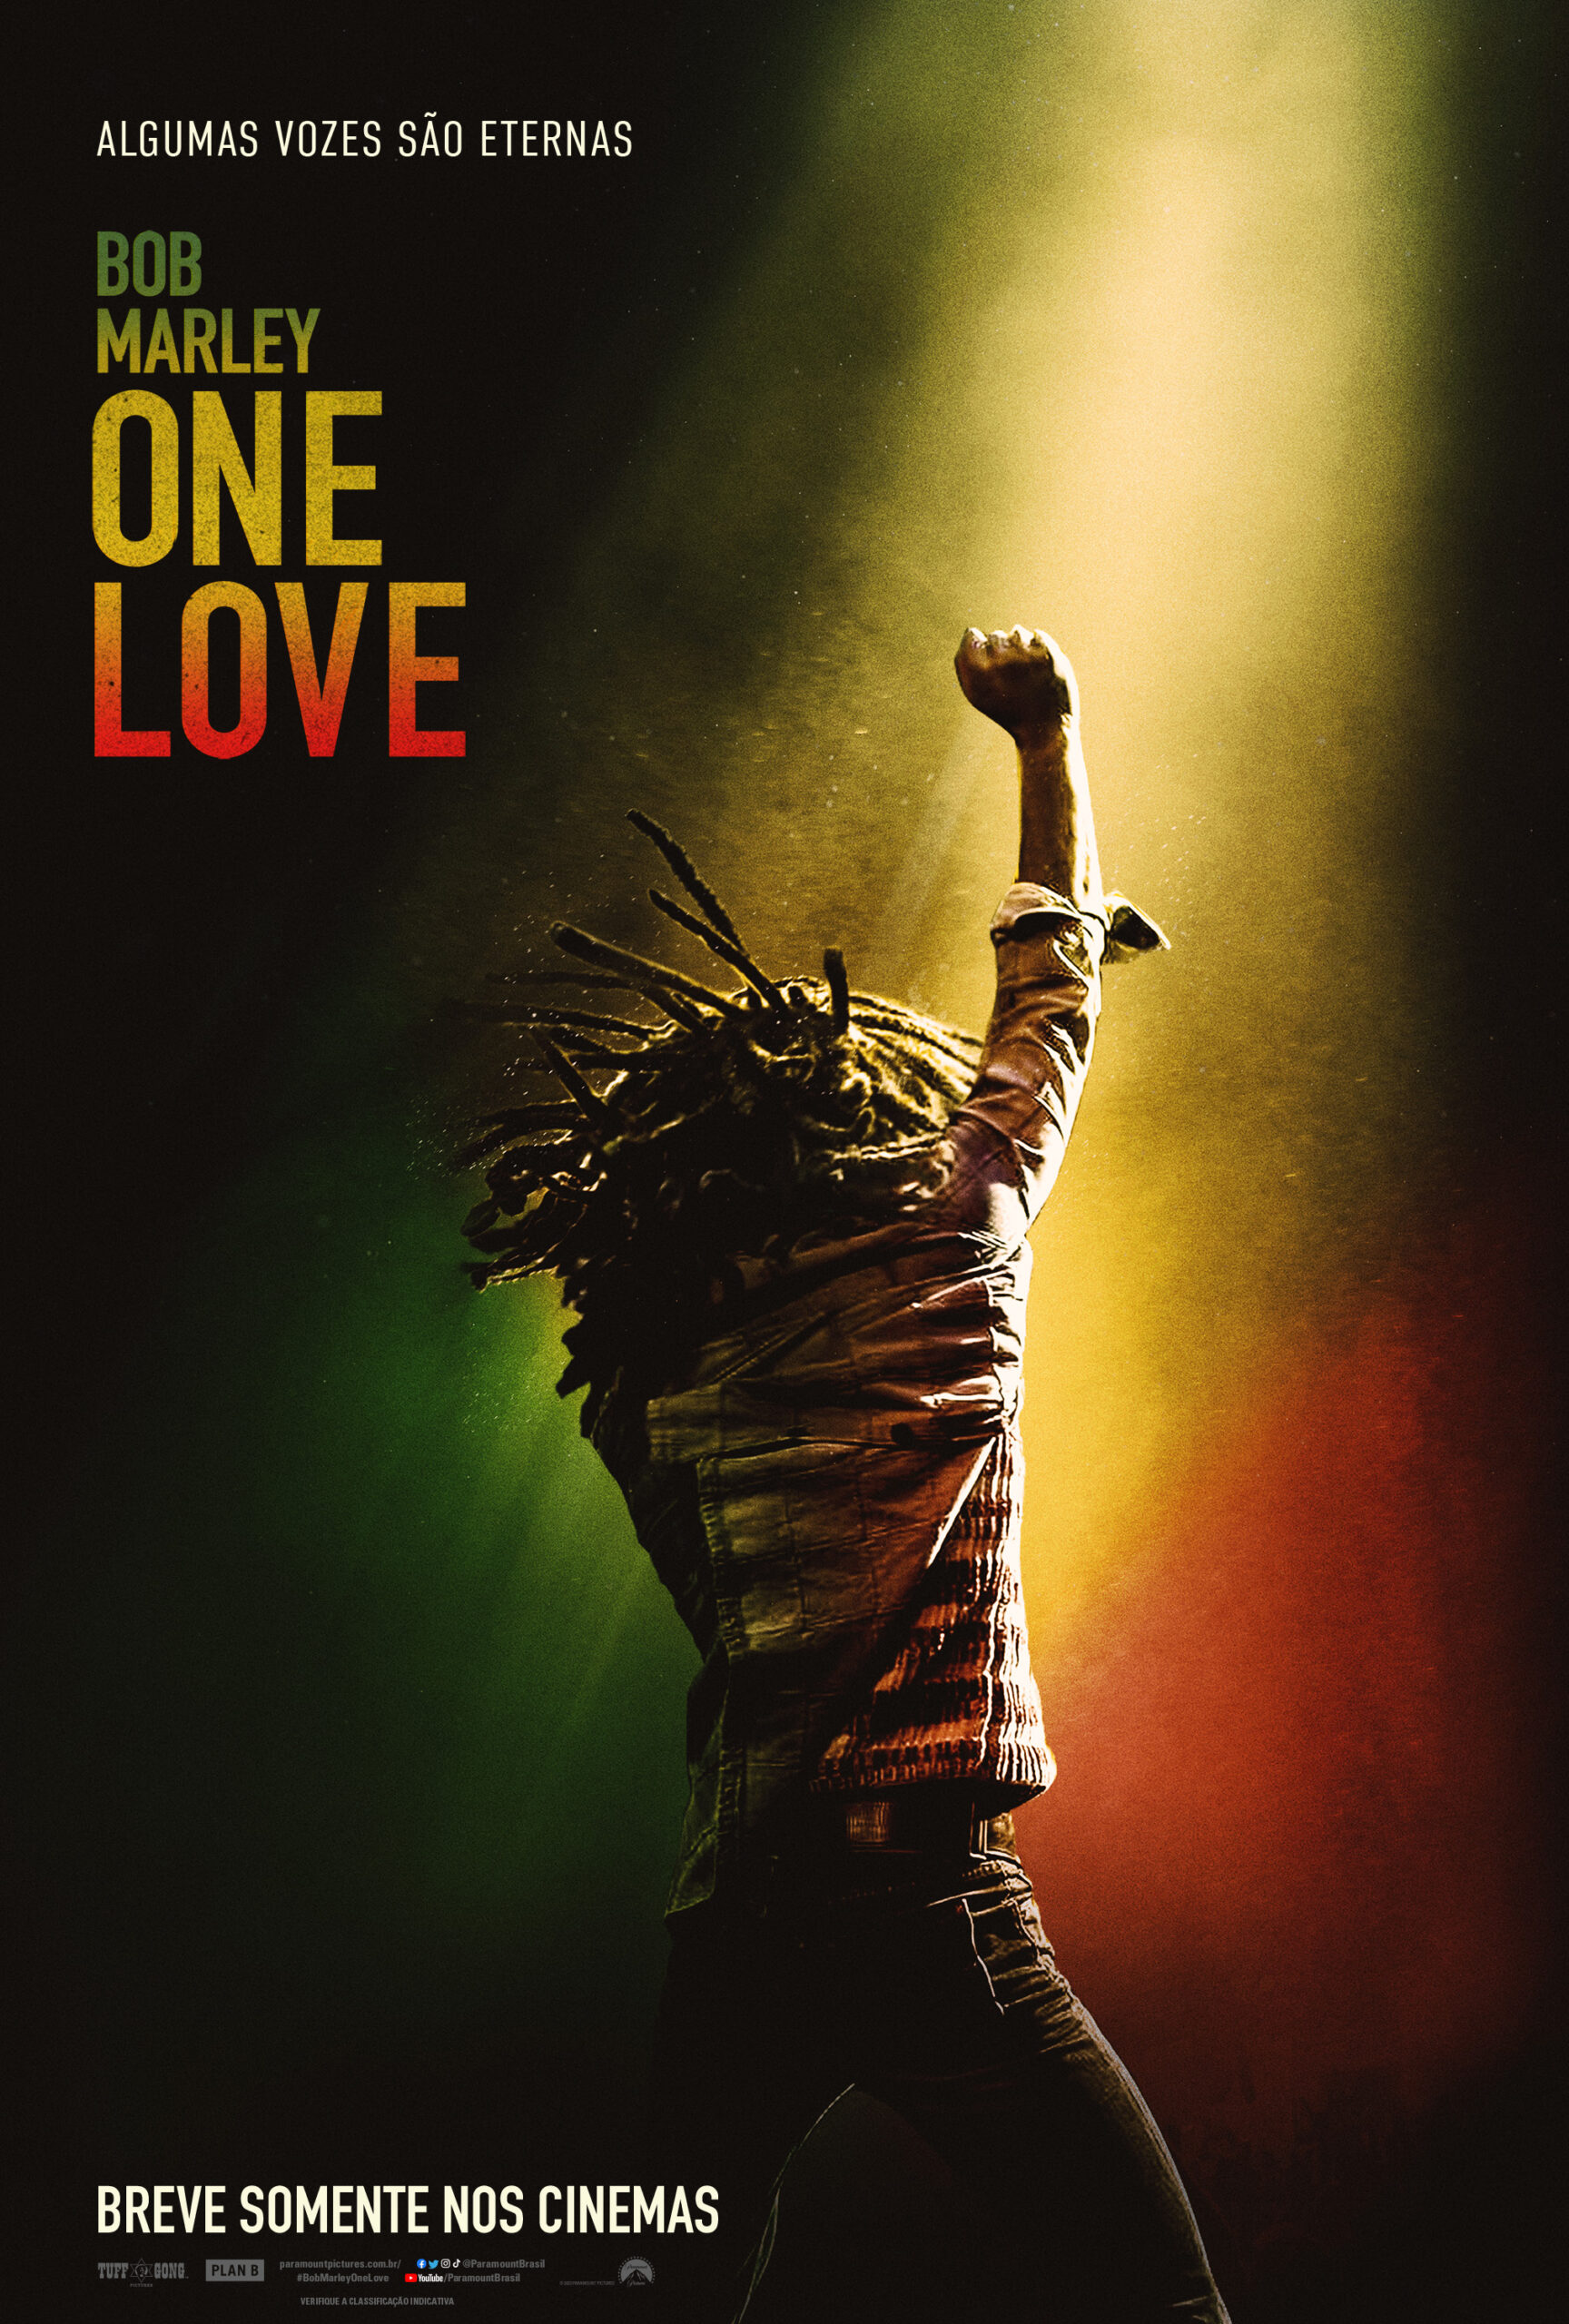 Bob Marley: One Love”: filme da maior lenda do reggae ganha primeiro trailer